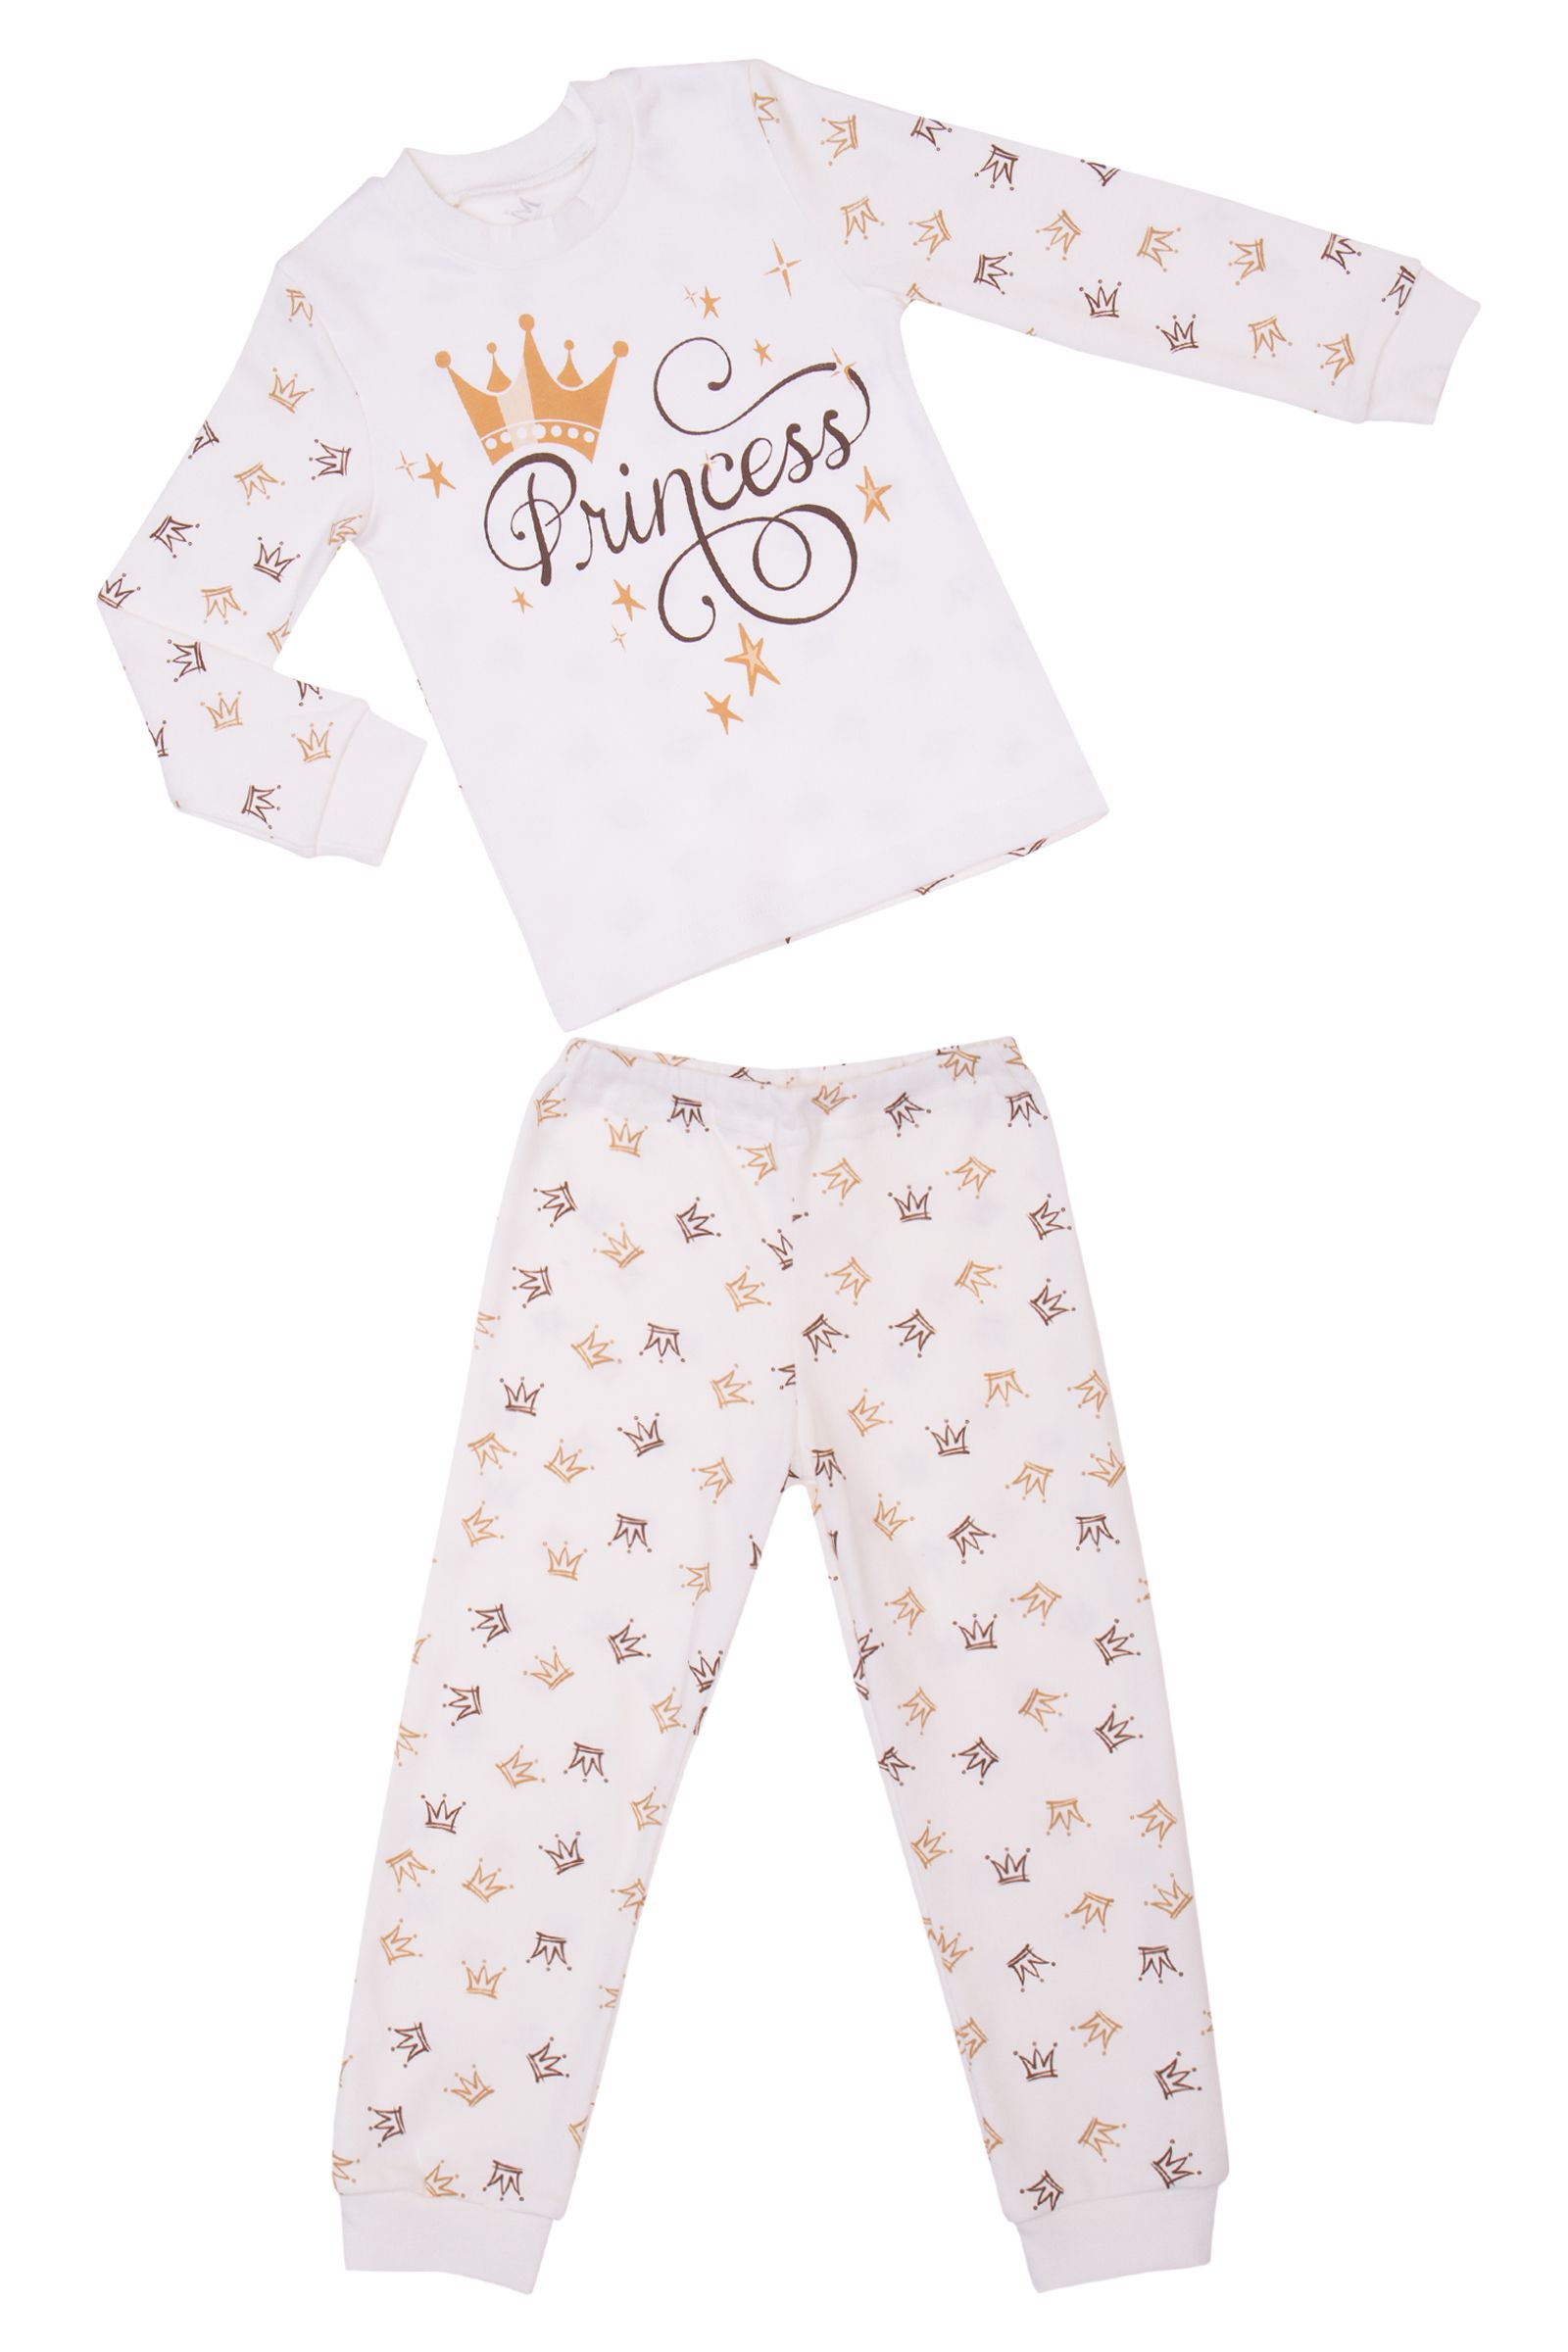 Пижама-ПЖ01-3563 оптом от производителя детской одежды 'Алёна'